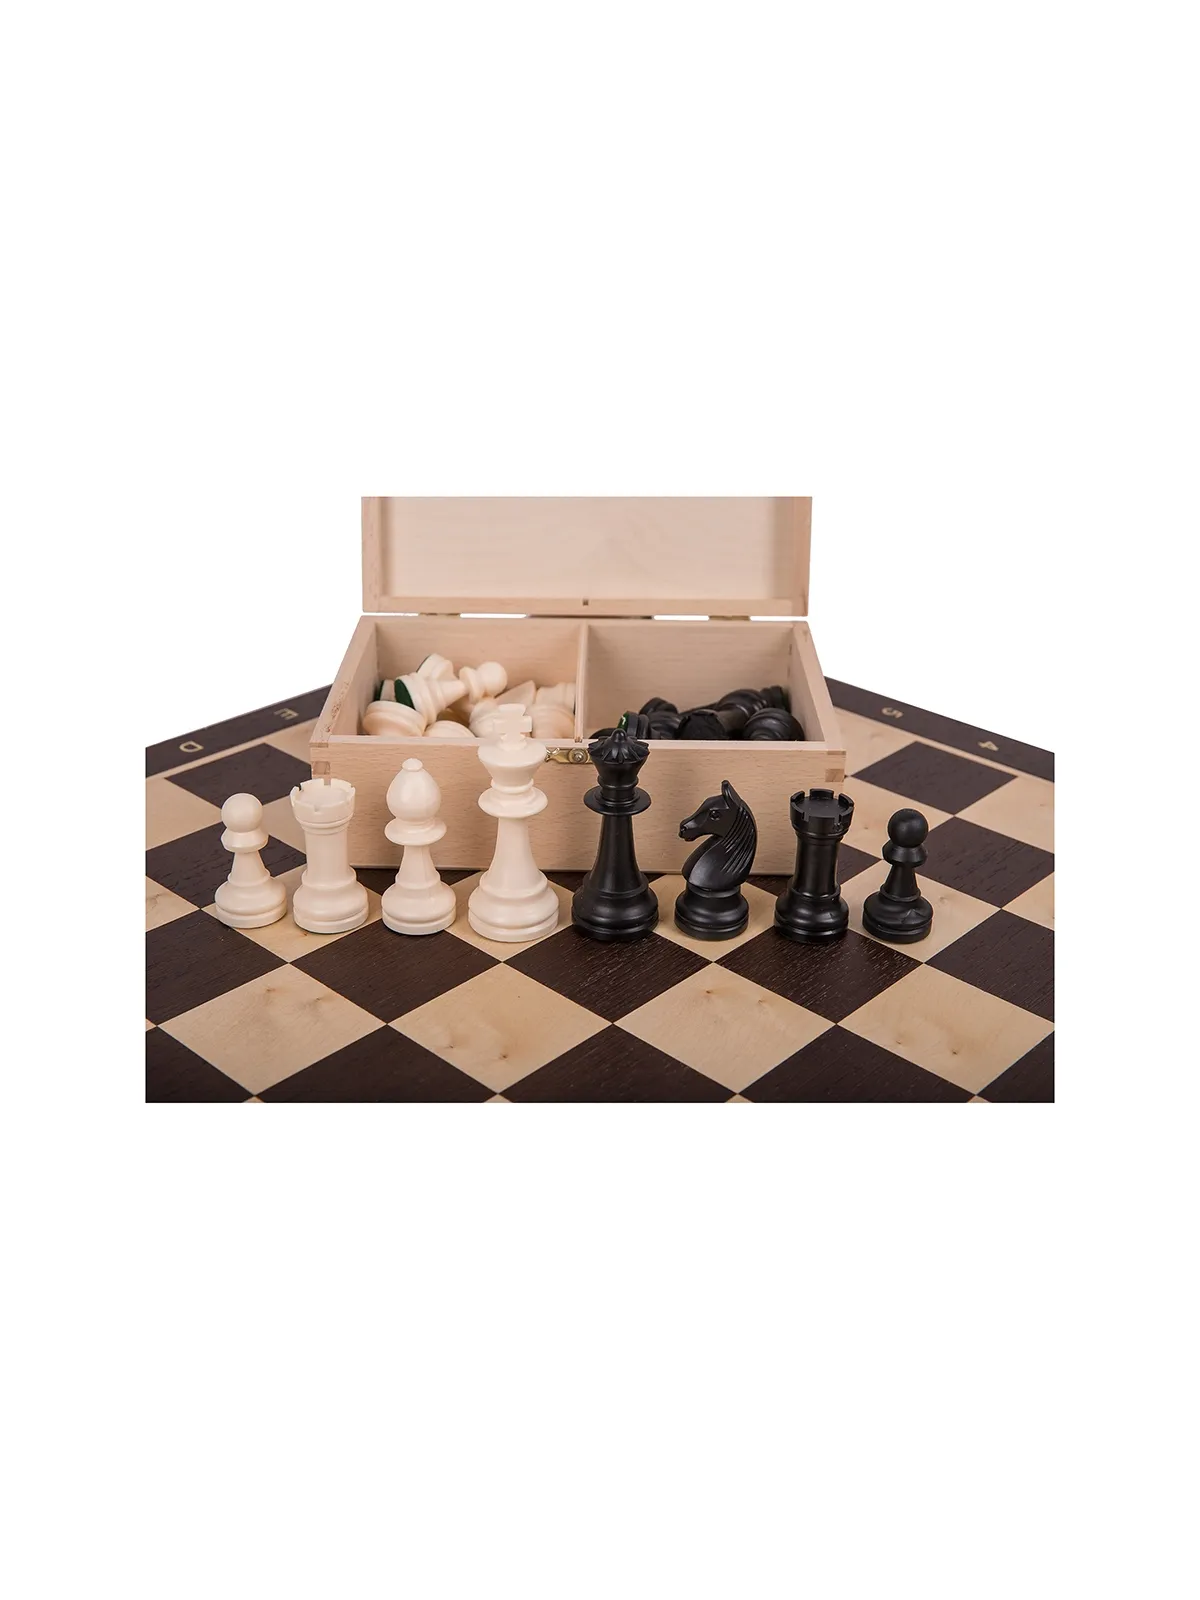 Profi Chess Set No 5 - Outlet